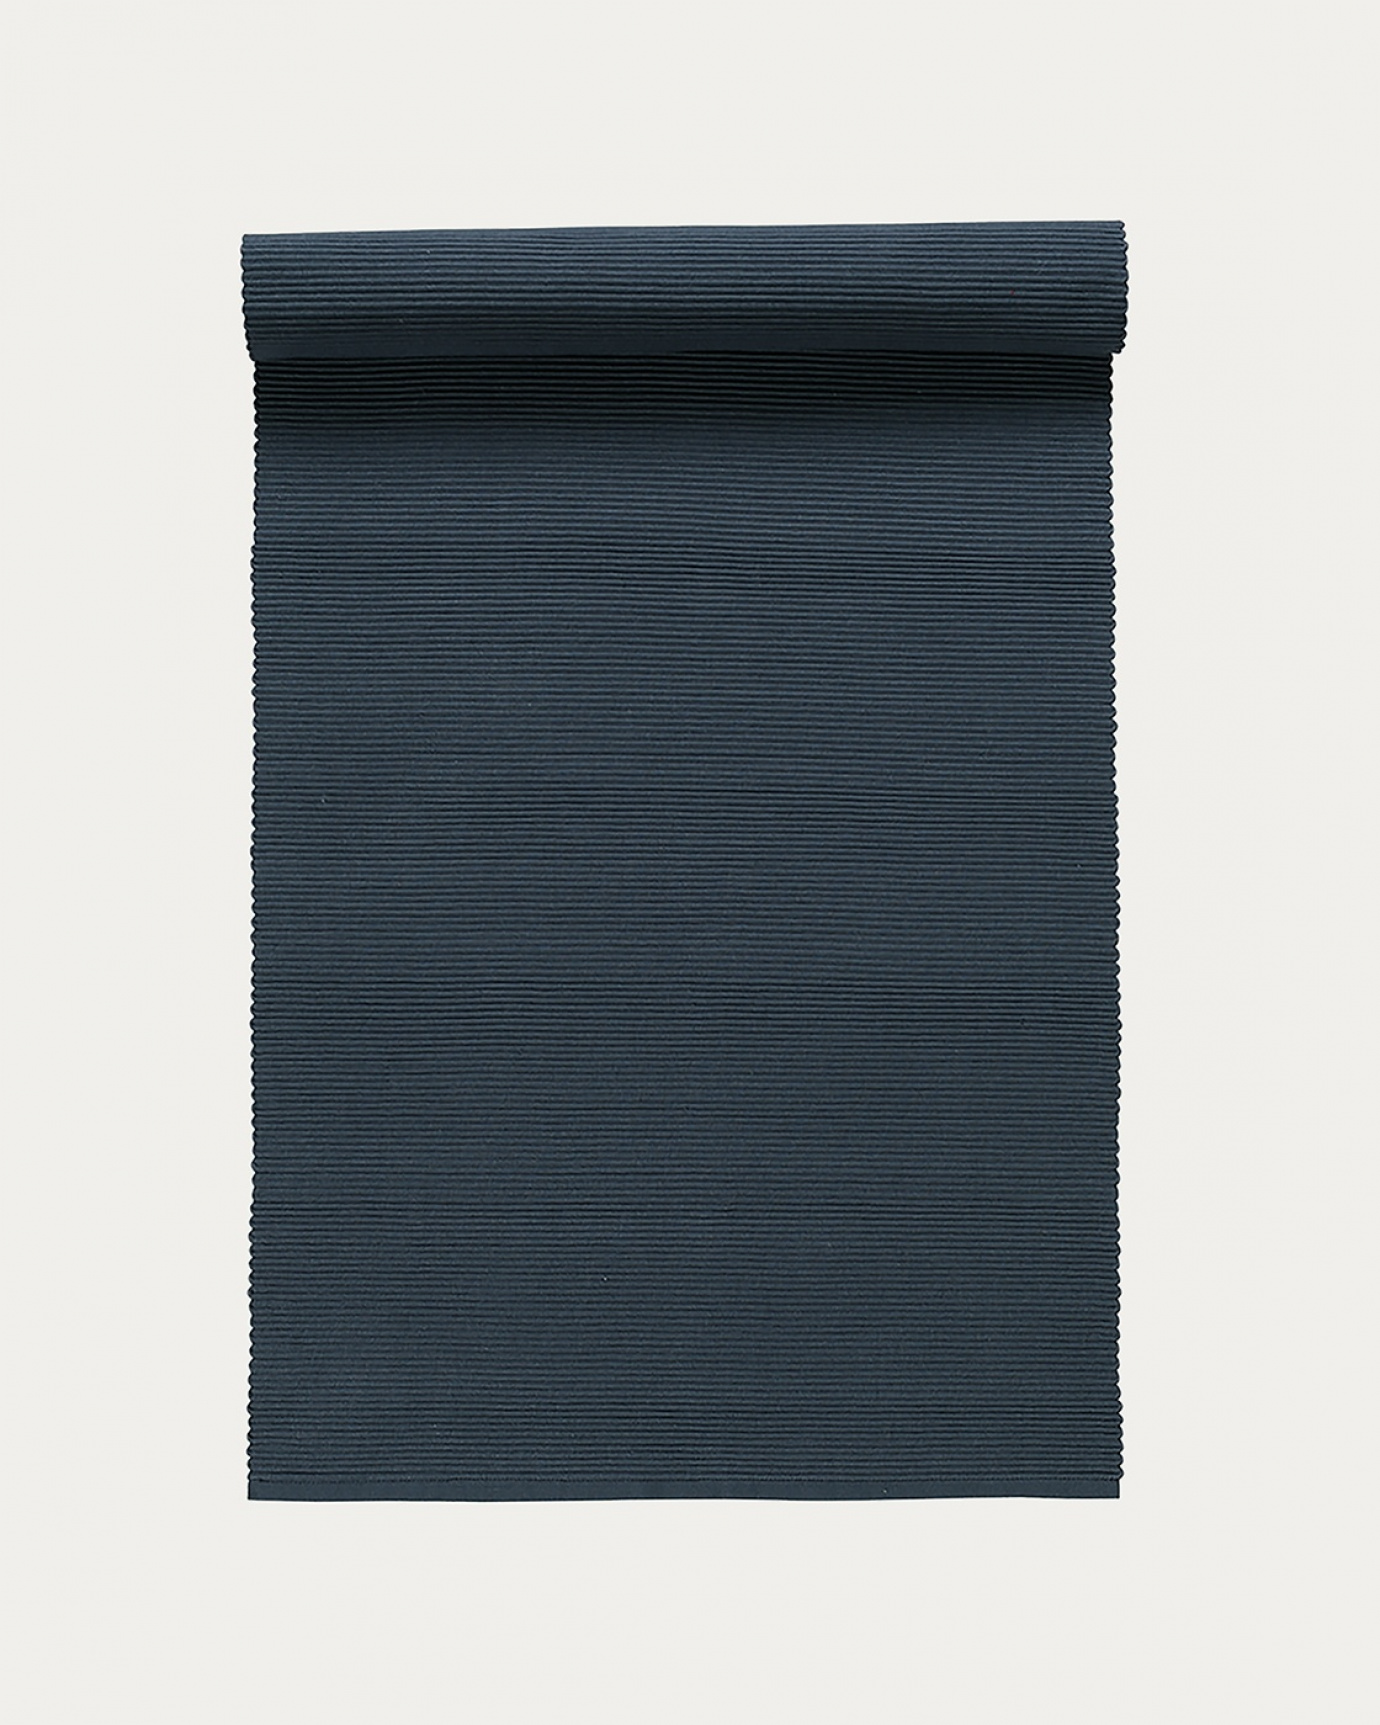 Produktbild dunkles stahlblau UNI Tischläufer aus weicher Baumwolle in Rippenqualität von LINUM DESIGN. Größe 45x150 cm.